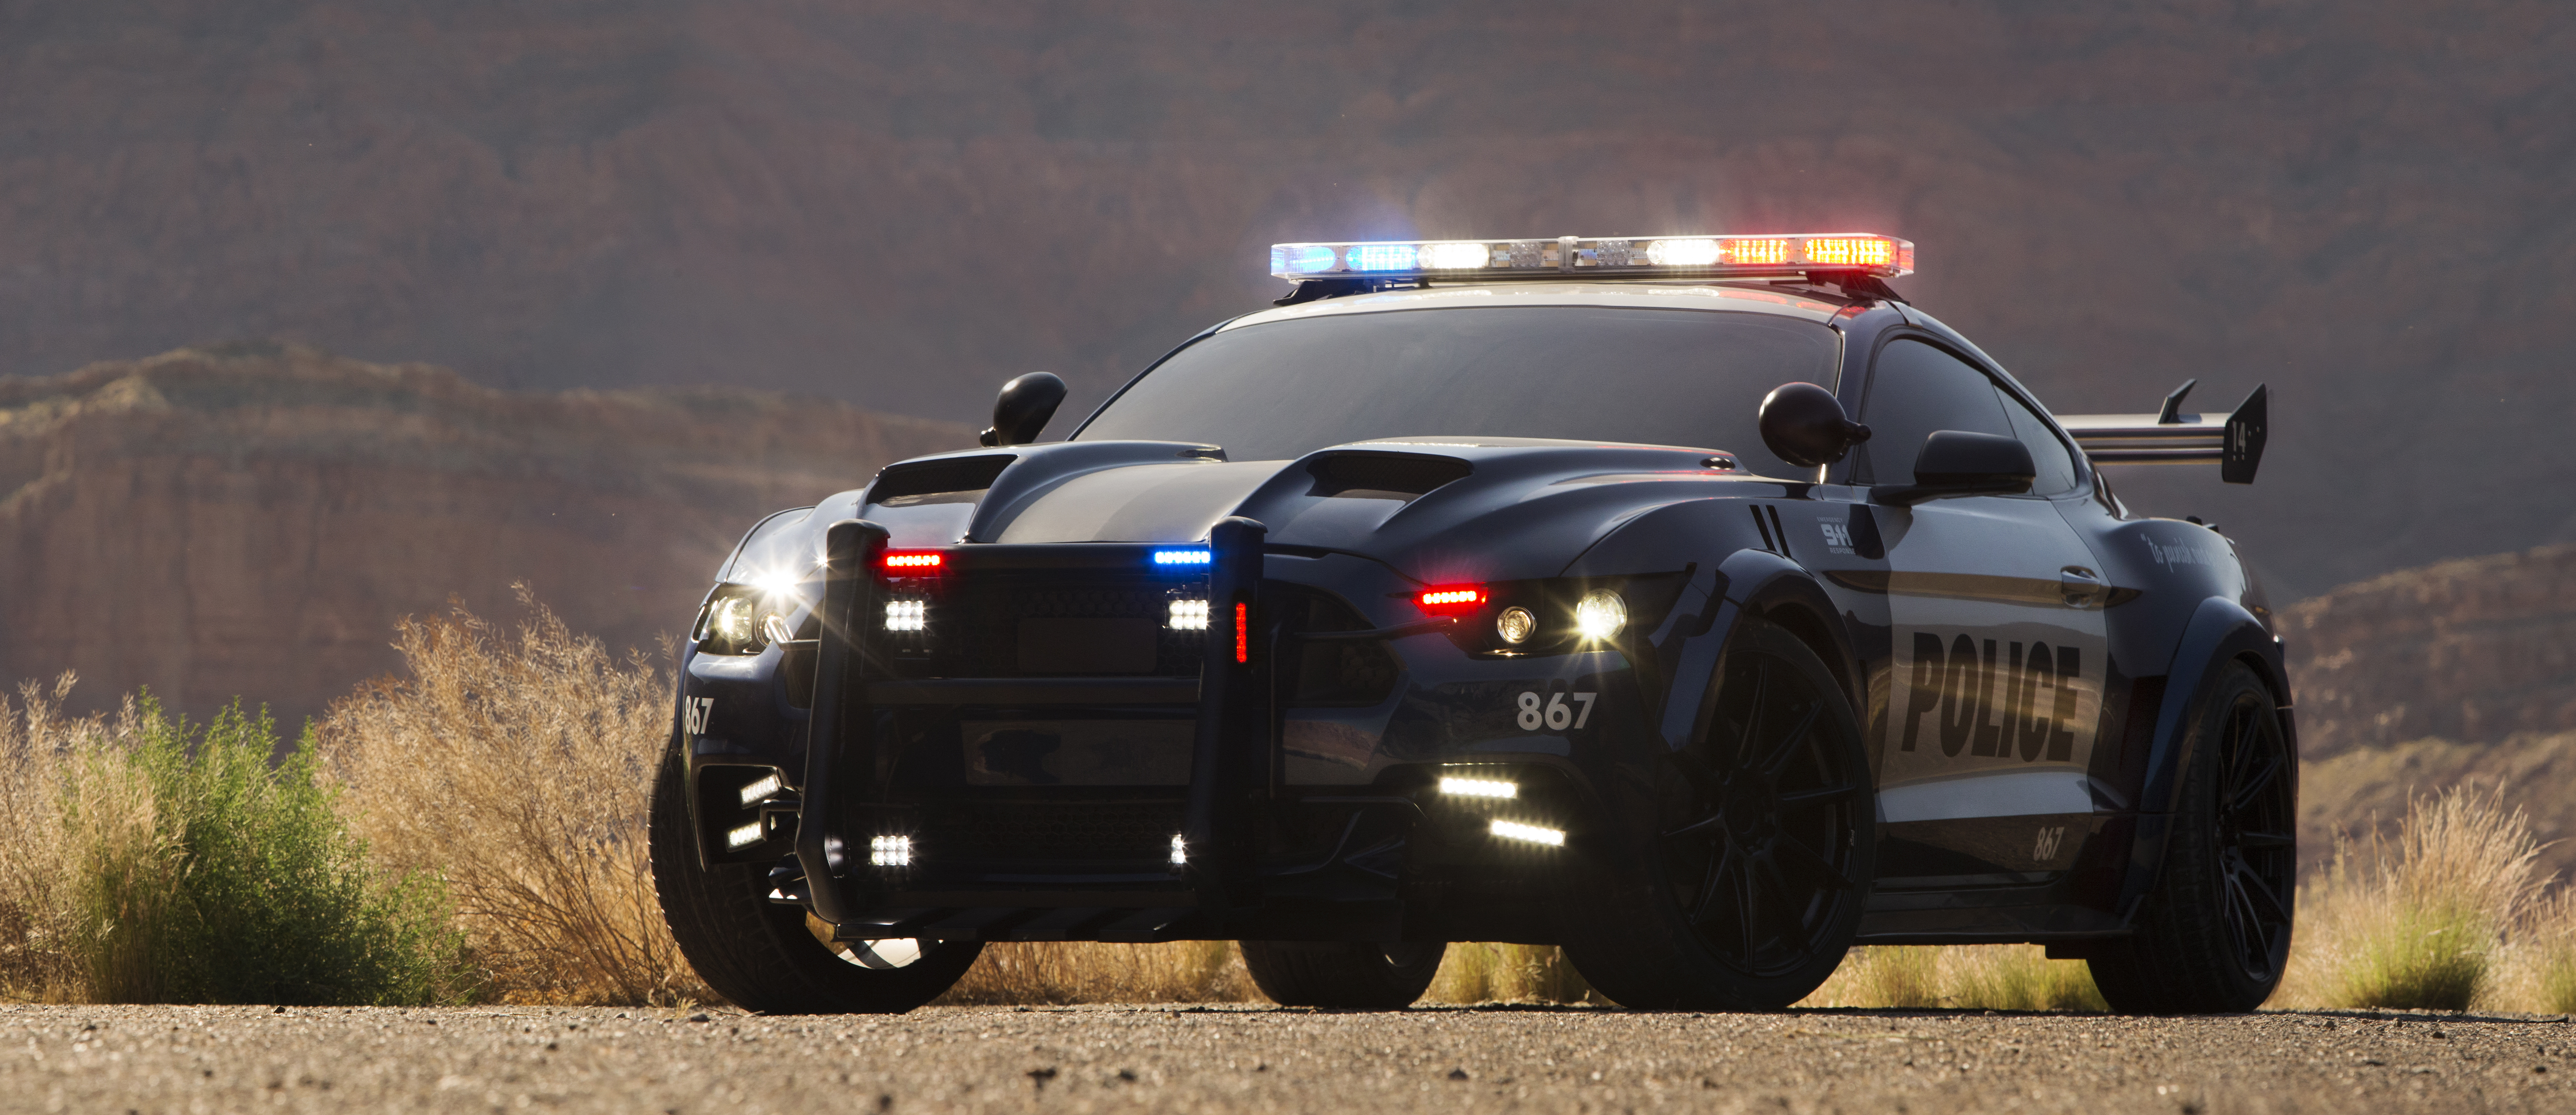 壁紙 6760x2926 福特汽车 Transformers 5 The Last Knight Barricade Mustang 警察 汽车 下载 照片